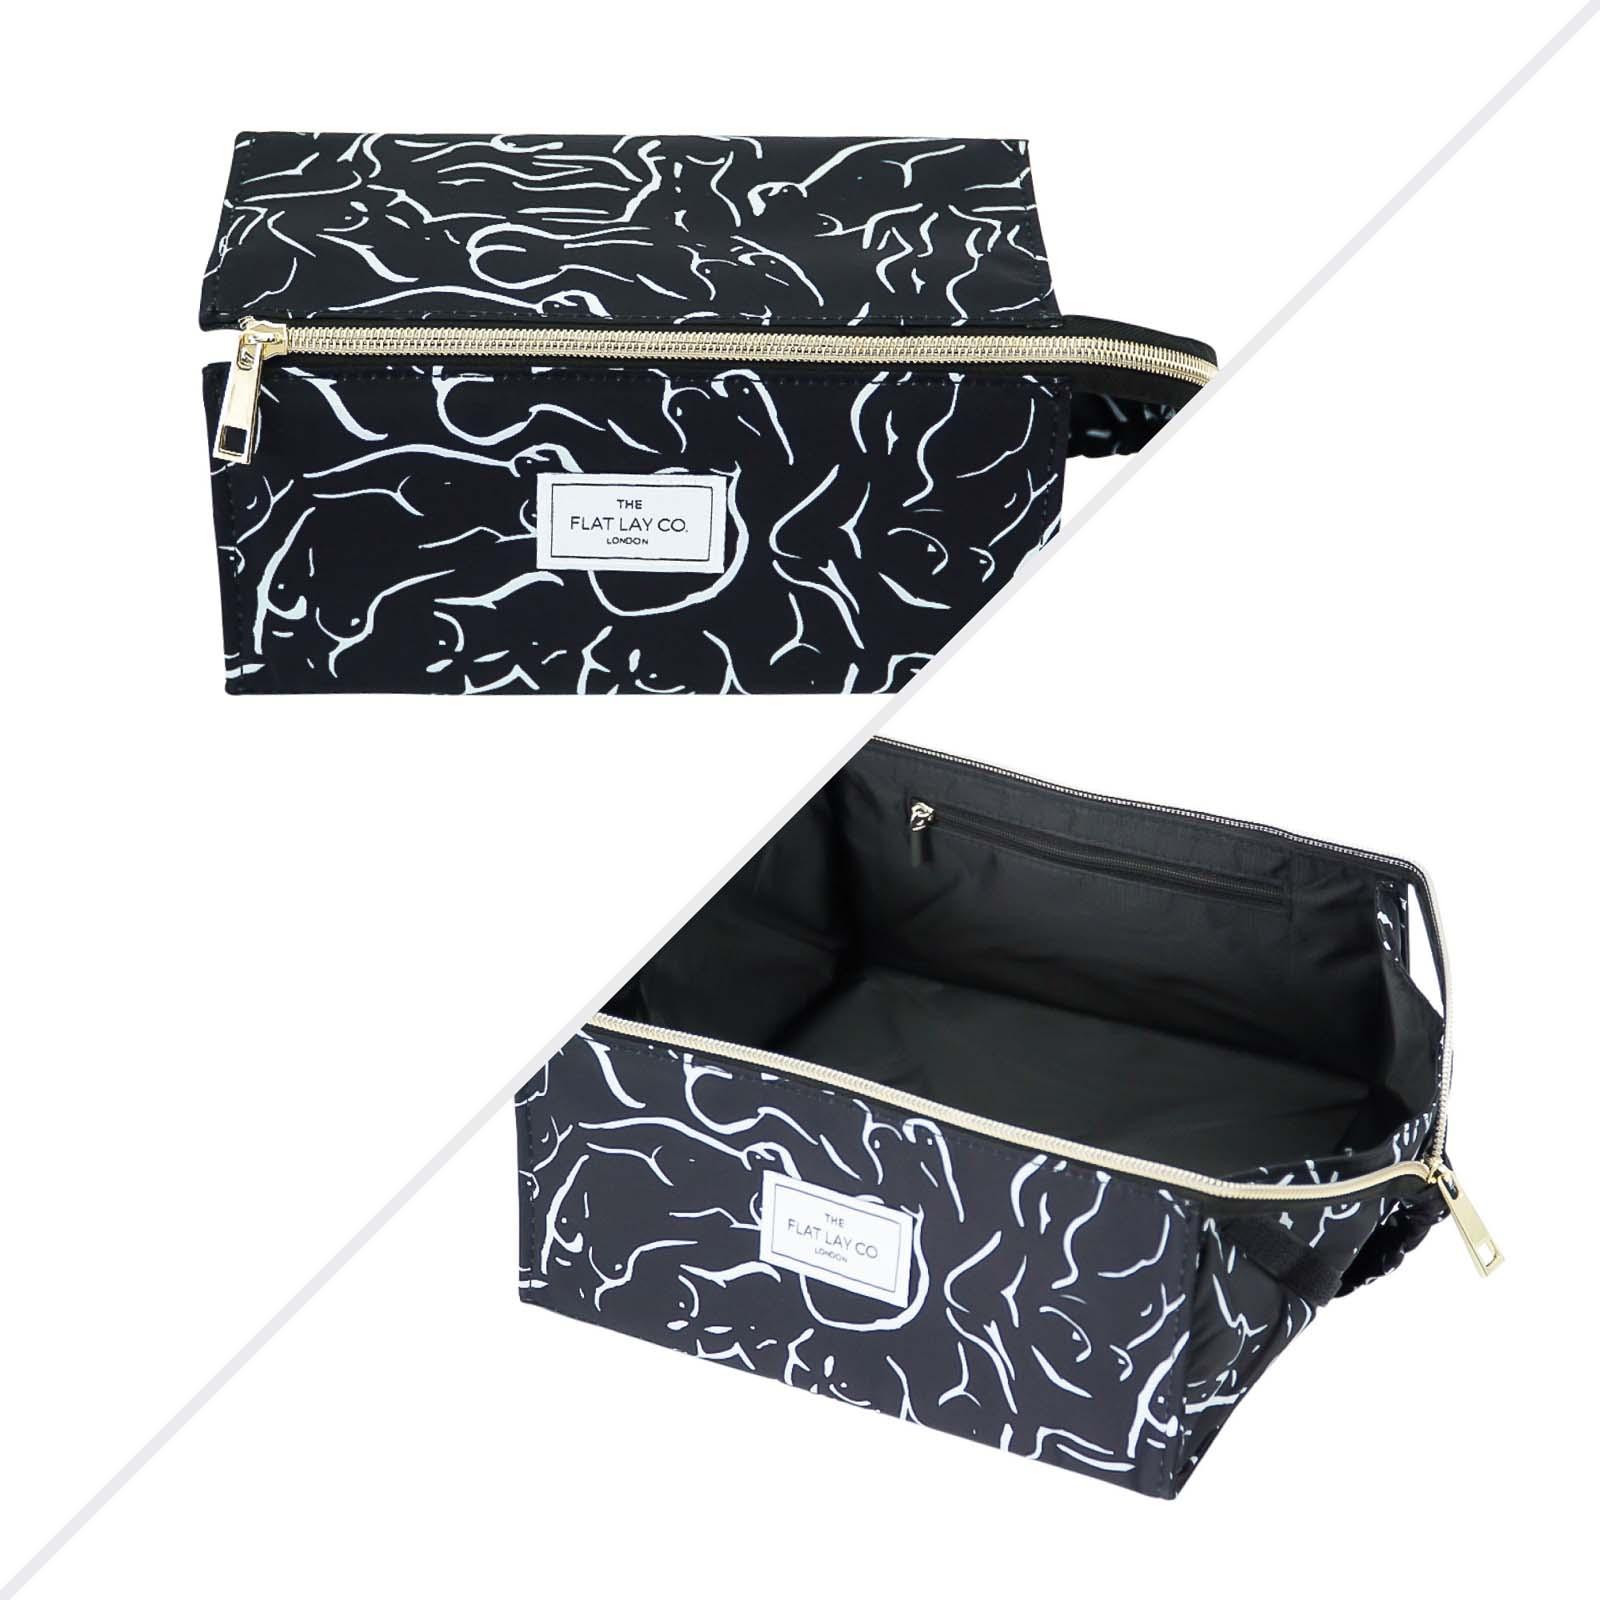 The Flat Lay Co. Open Flat Makeup Box Bag Forms | SEPHORA UK